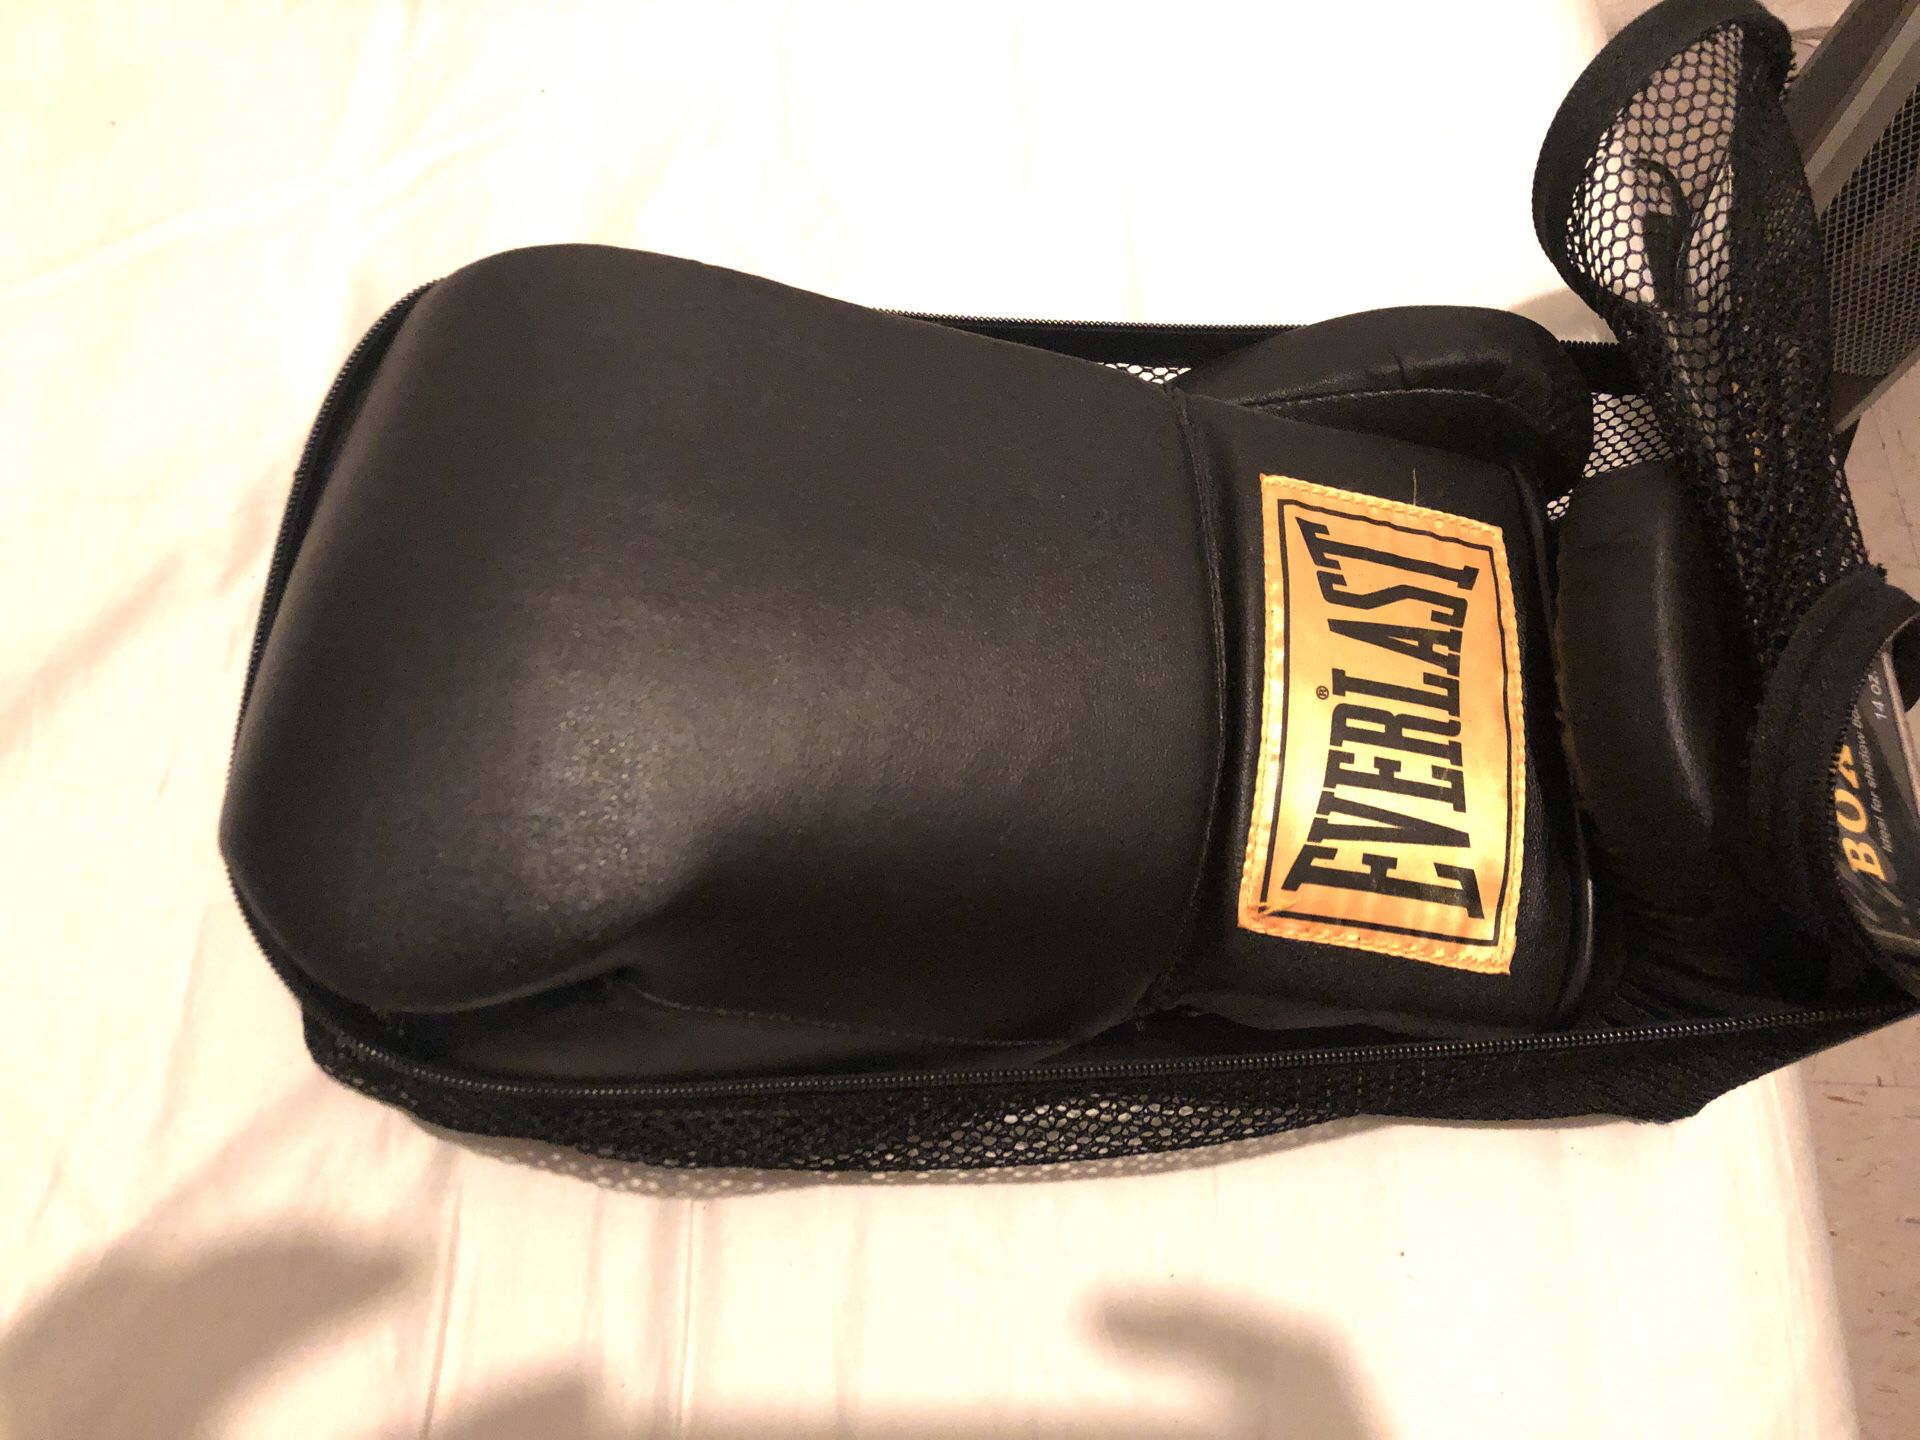 14 oz Durahide Everlasting boxing gloves